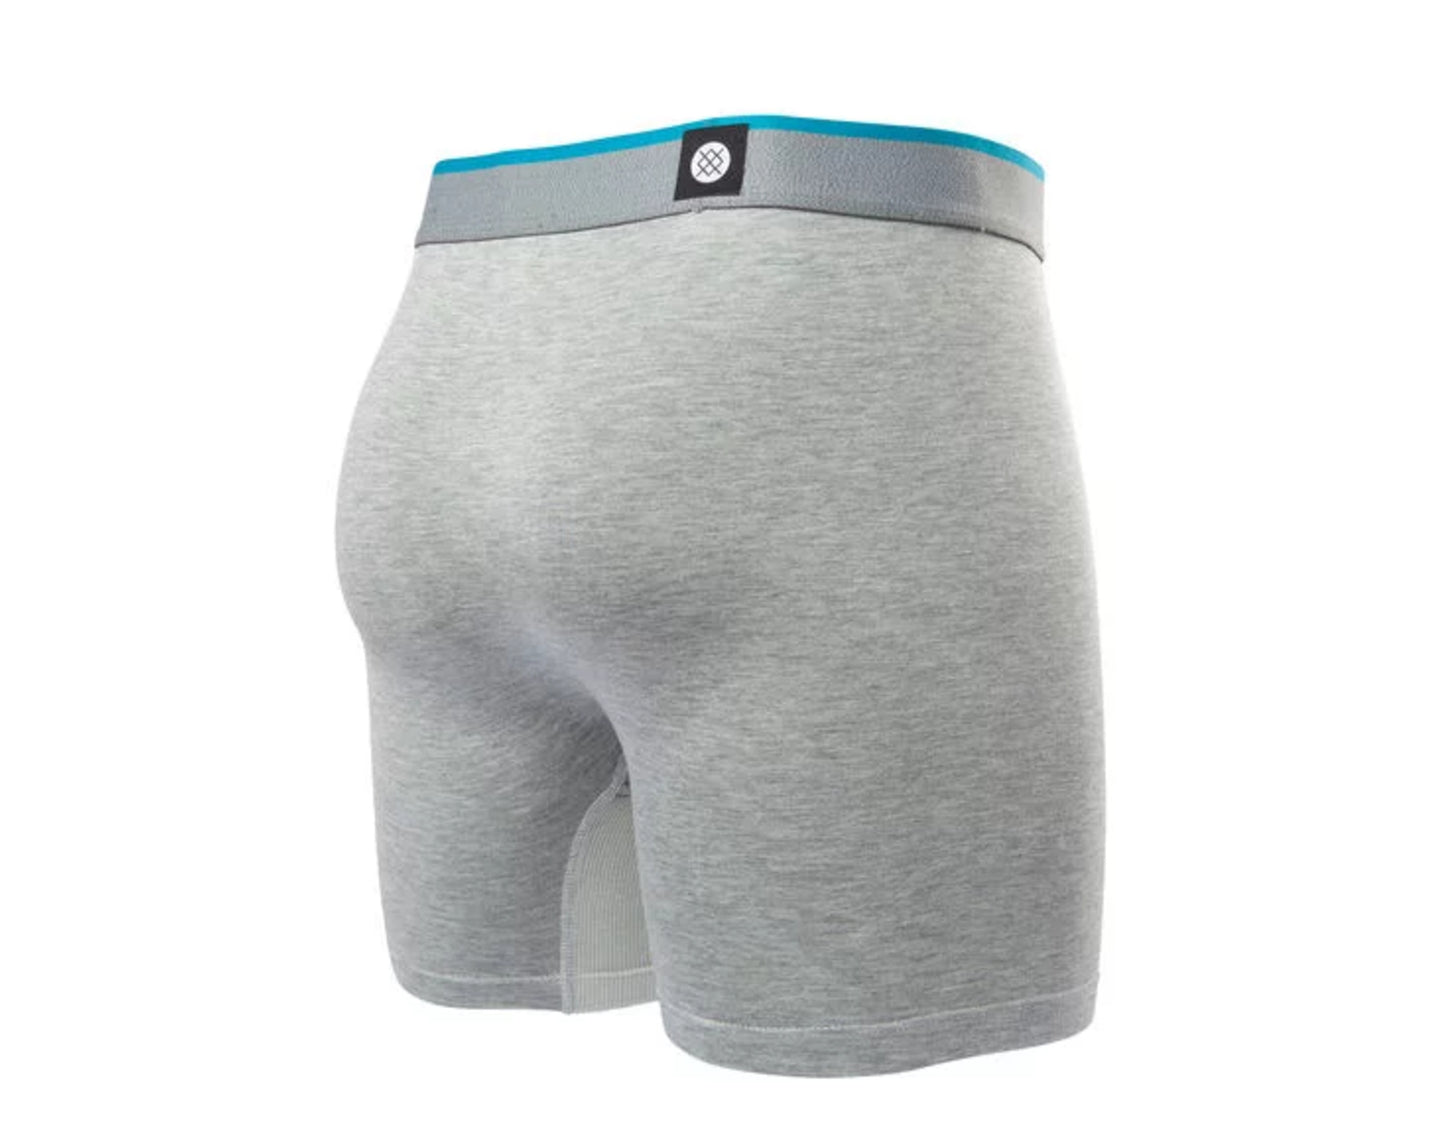 Stance Wholester Elemental WH 7 Inch Boxer Breifs Men's Underwear